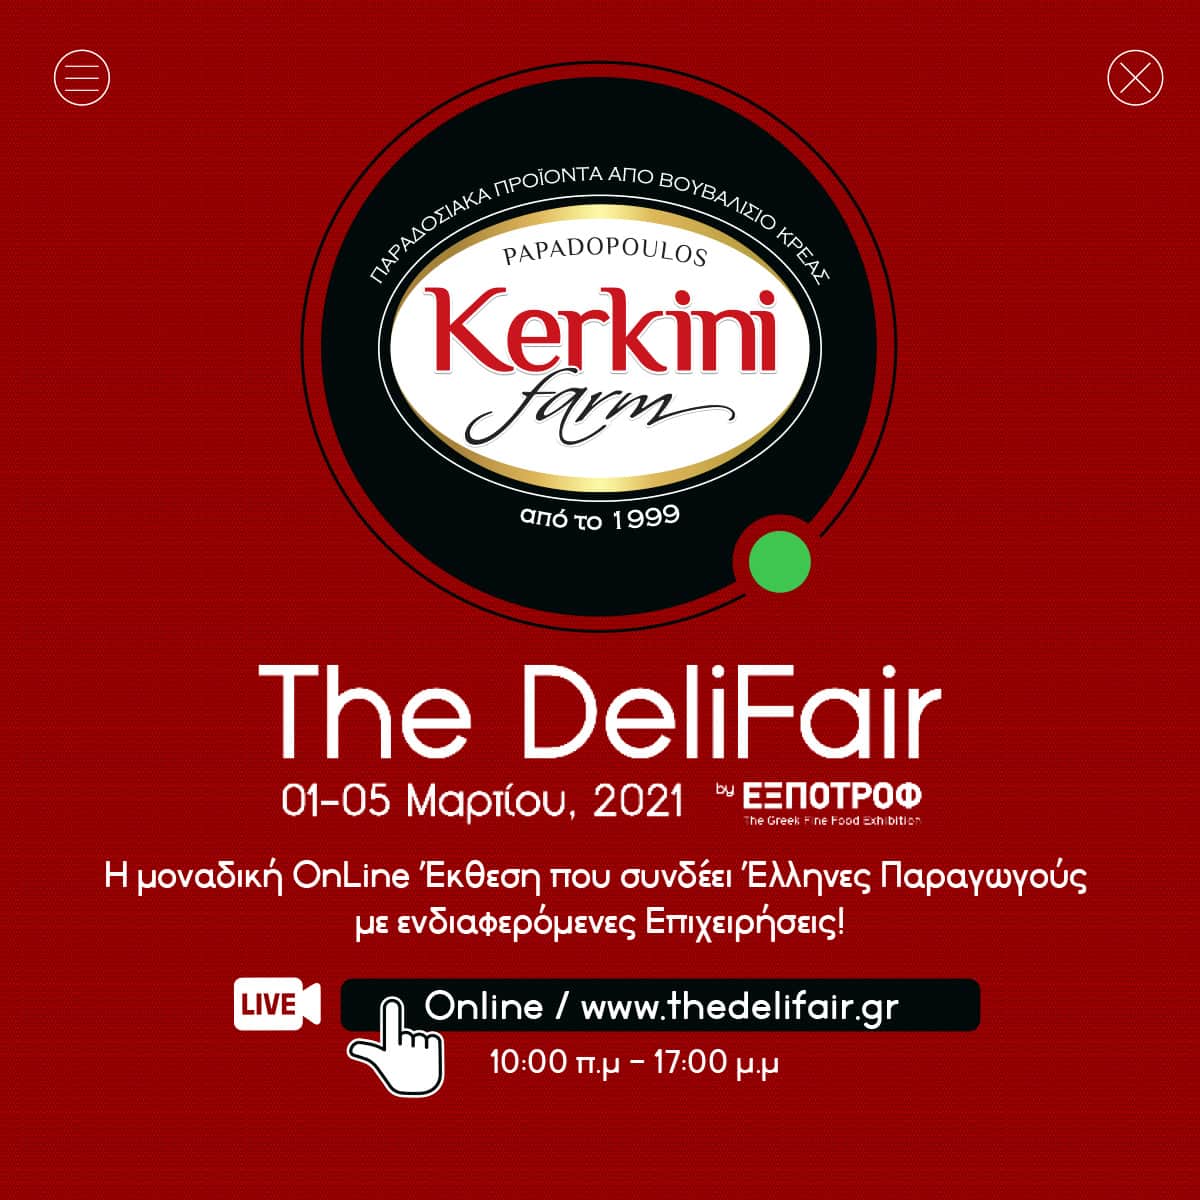 H Kerkini Farm στην 1η Ψηφιακή Έκθεση "The Deli Fair"